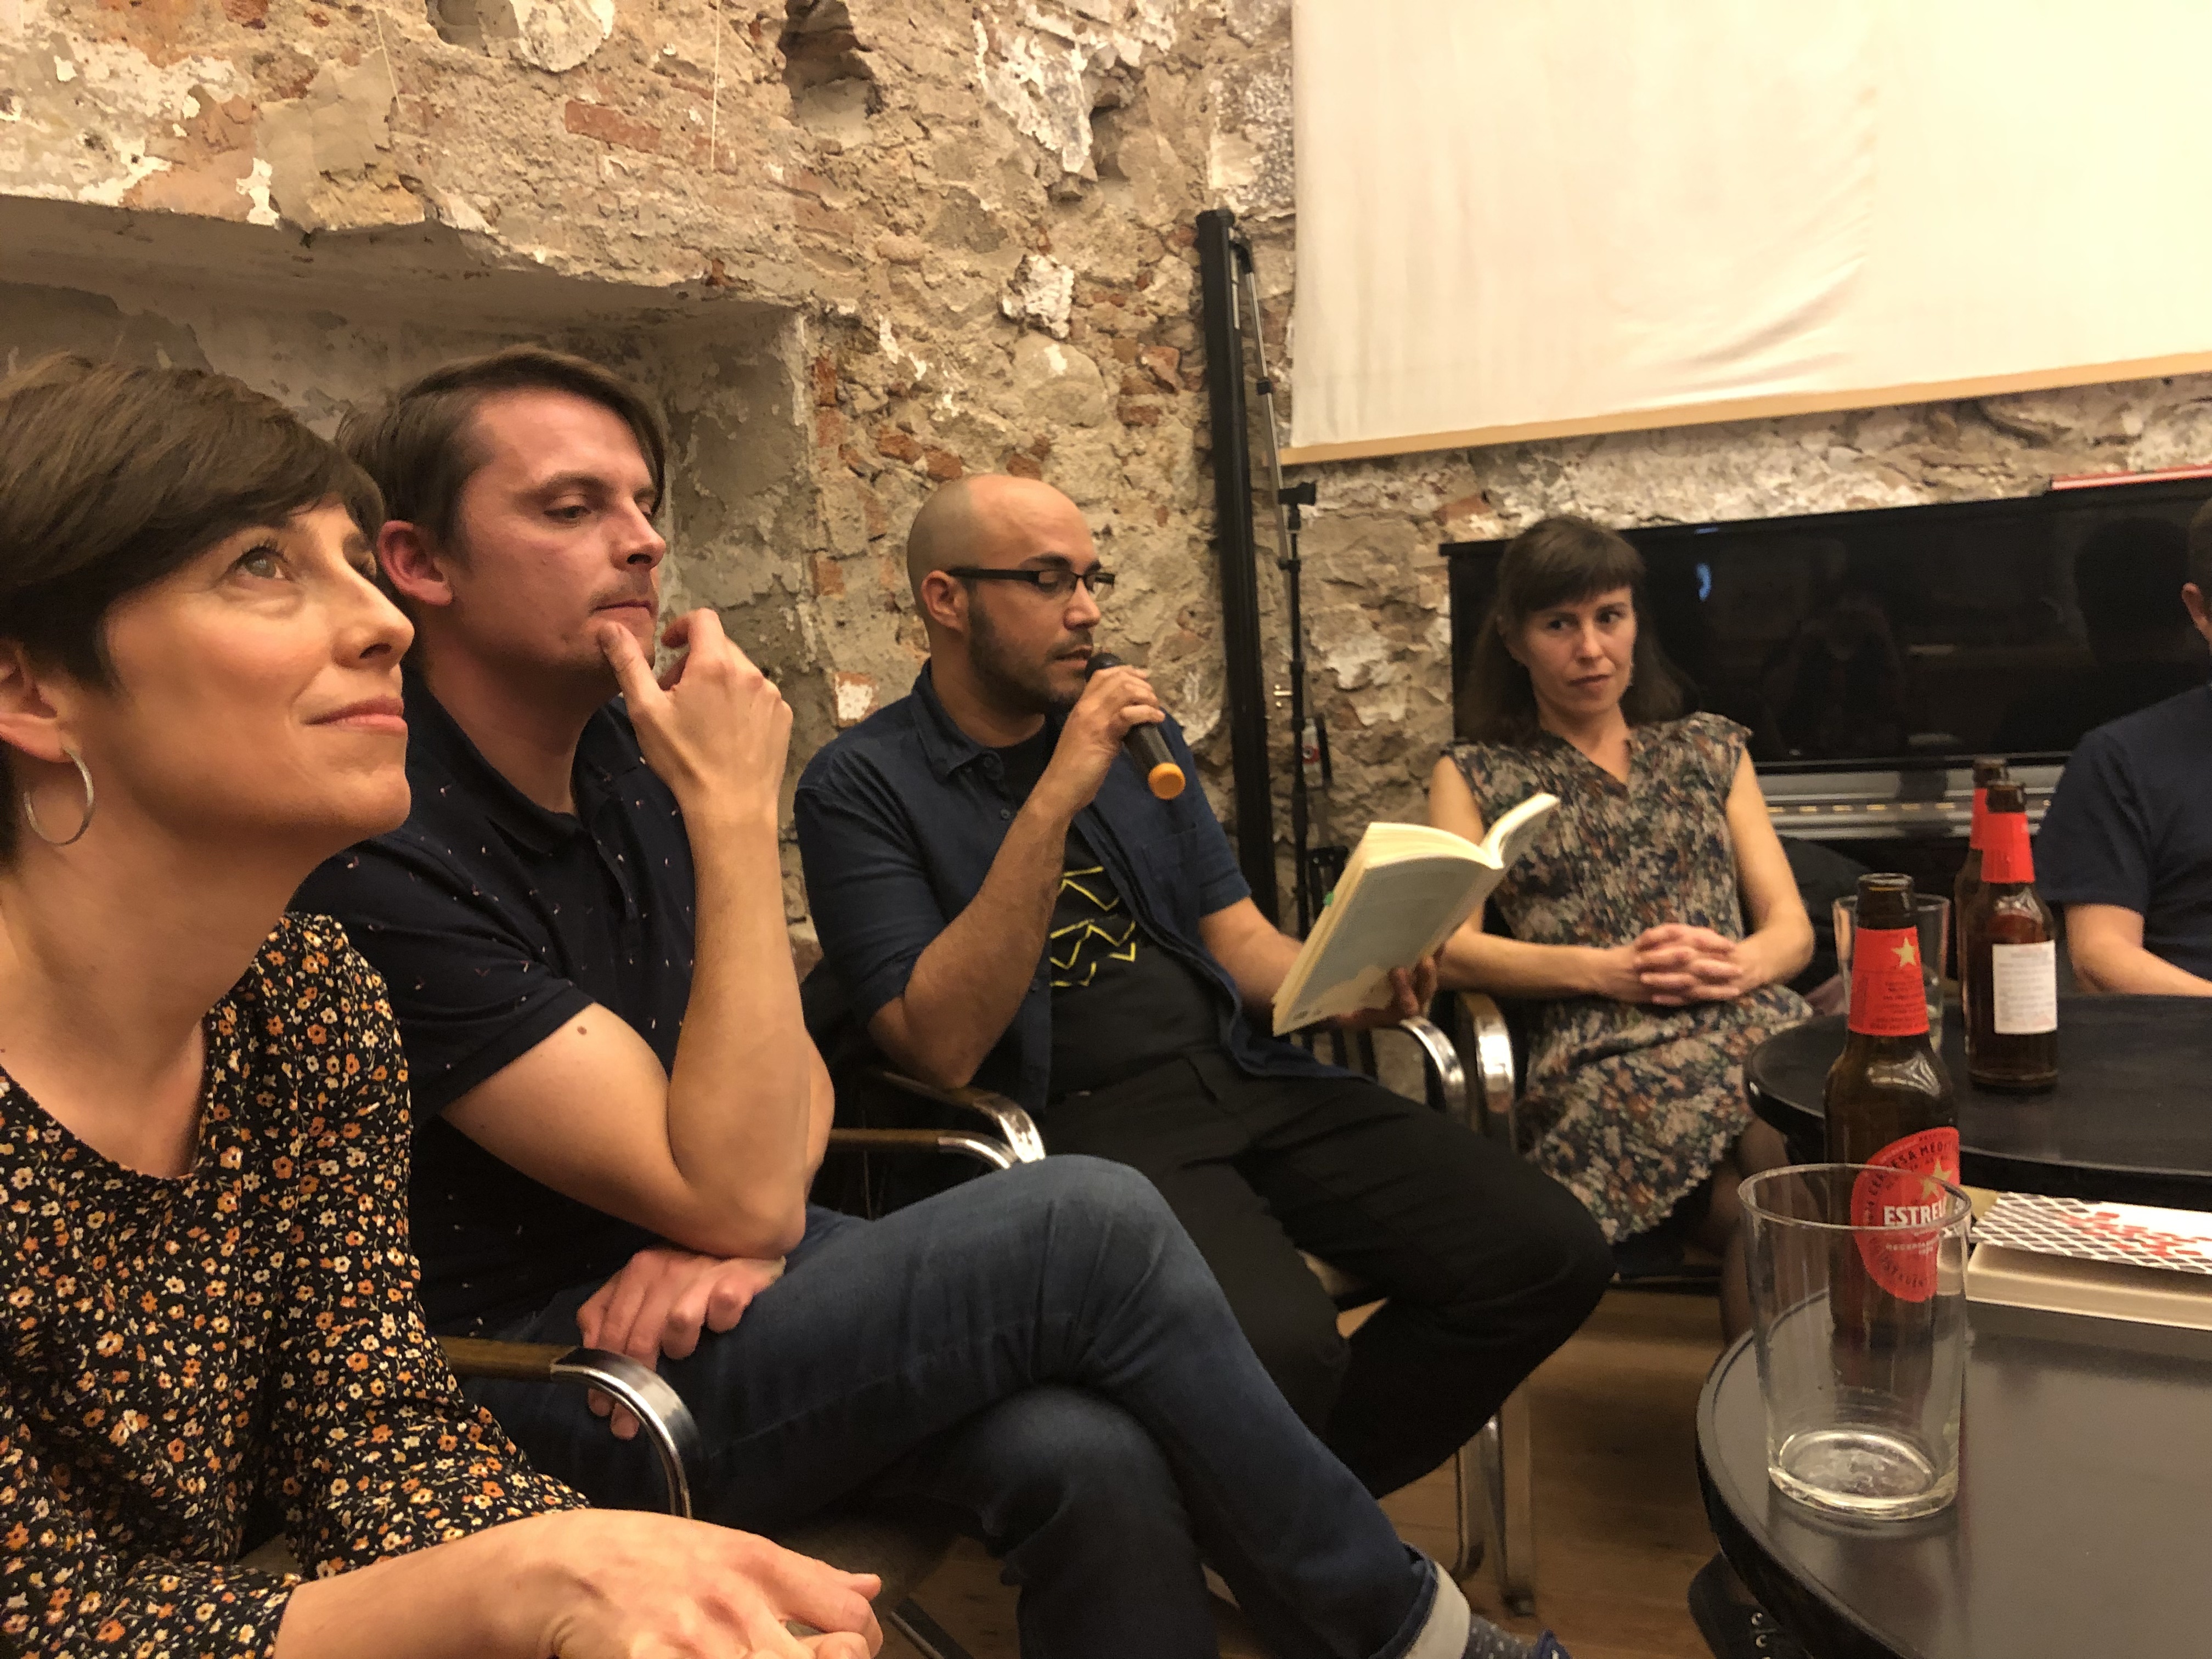 Conversación en la Librería Calders, Semana del libro argentino